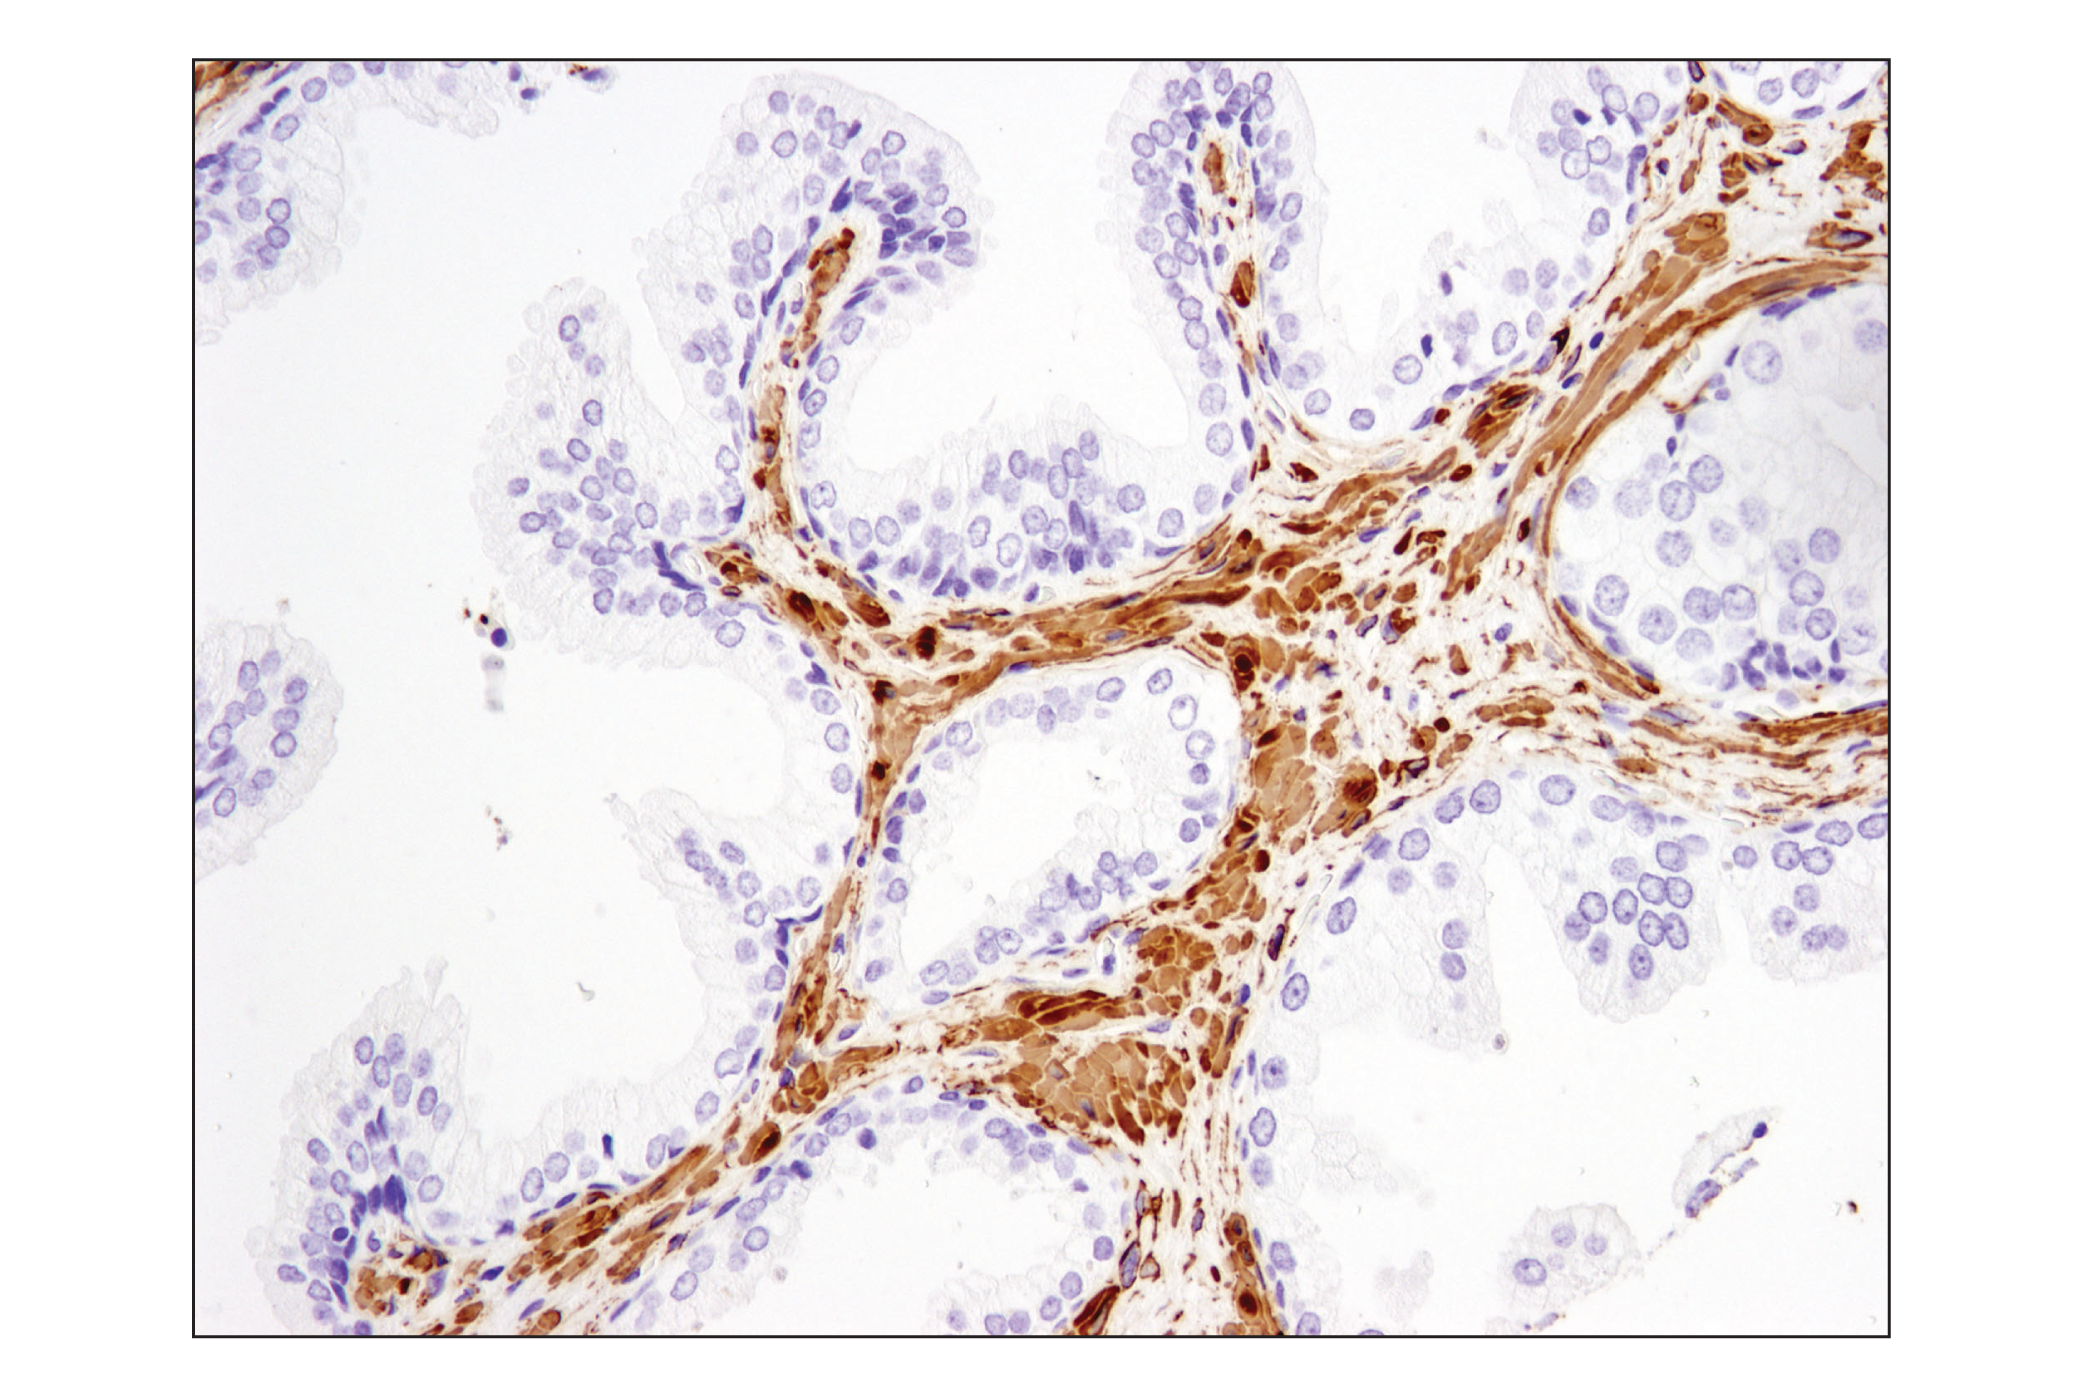  Image 36: TGF-β Fibrosis Pathway Antibody Sampler Kit